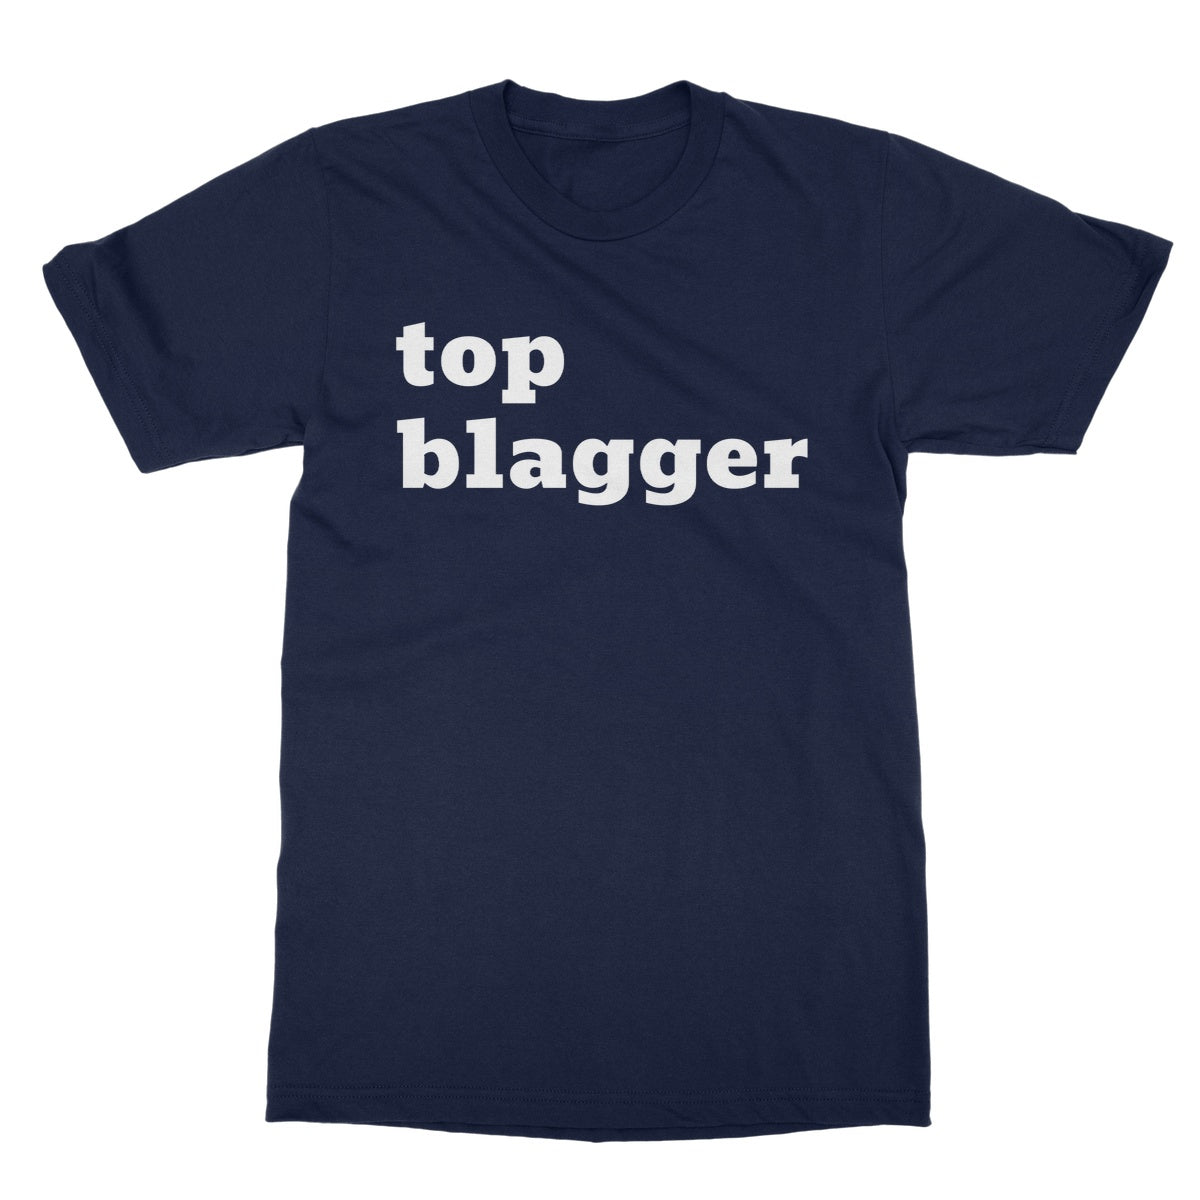 top blagger t shirt navy